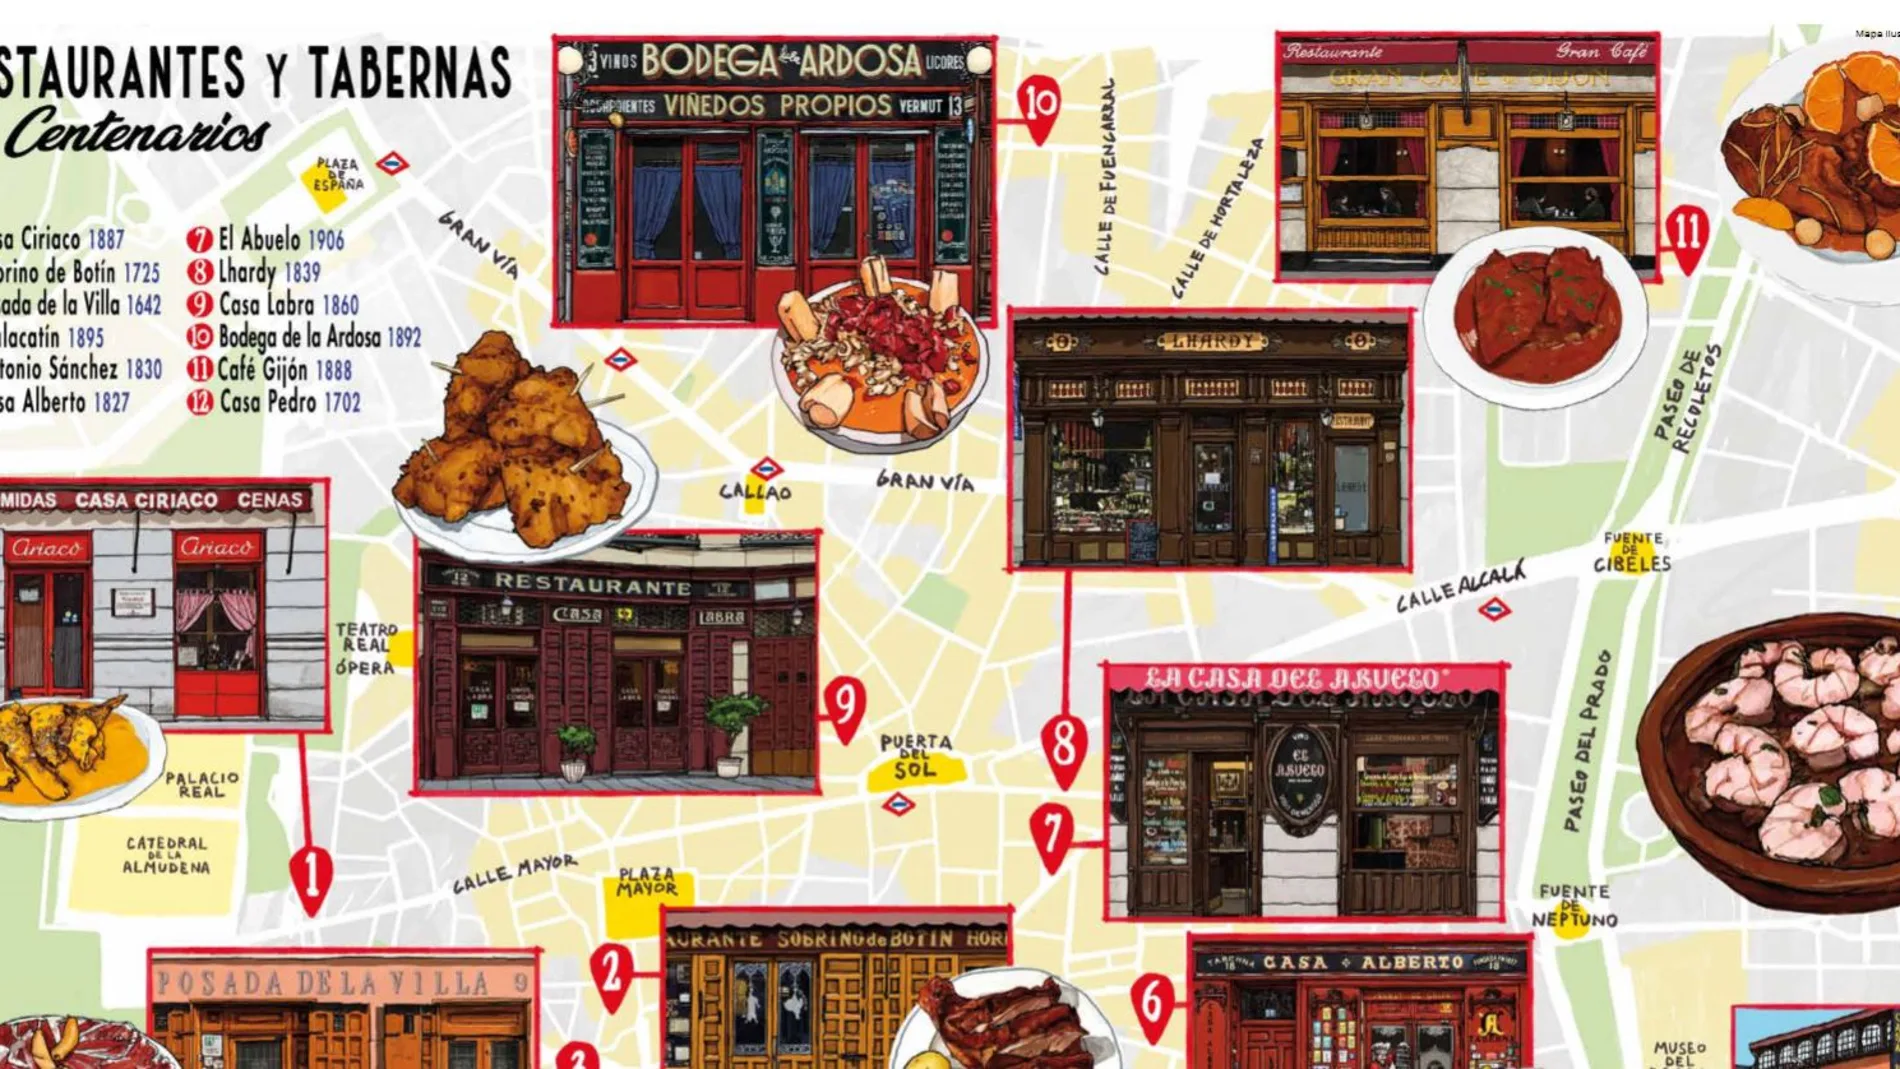 El Ayuntamiento apuesta por los restaurantes y tabernas centenarios con un Mapa Cultural Ilustrado